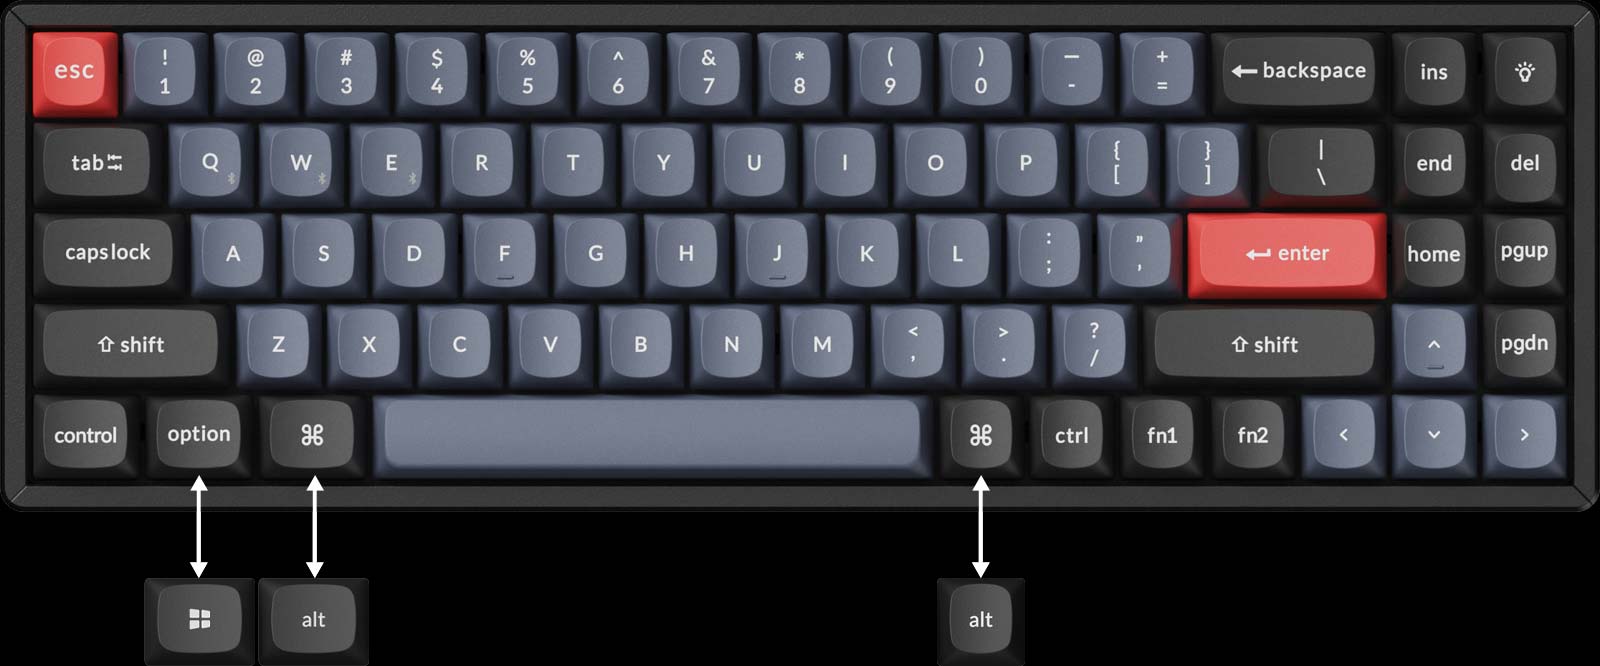 Keychron K14 Pro keyboard layout